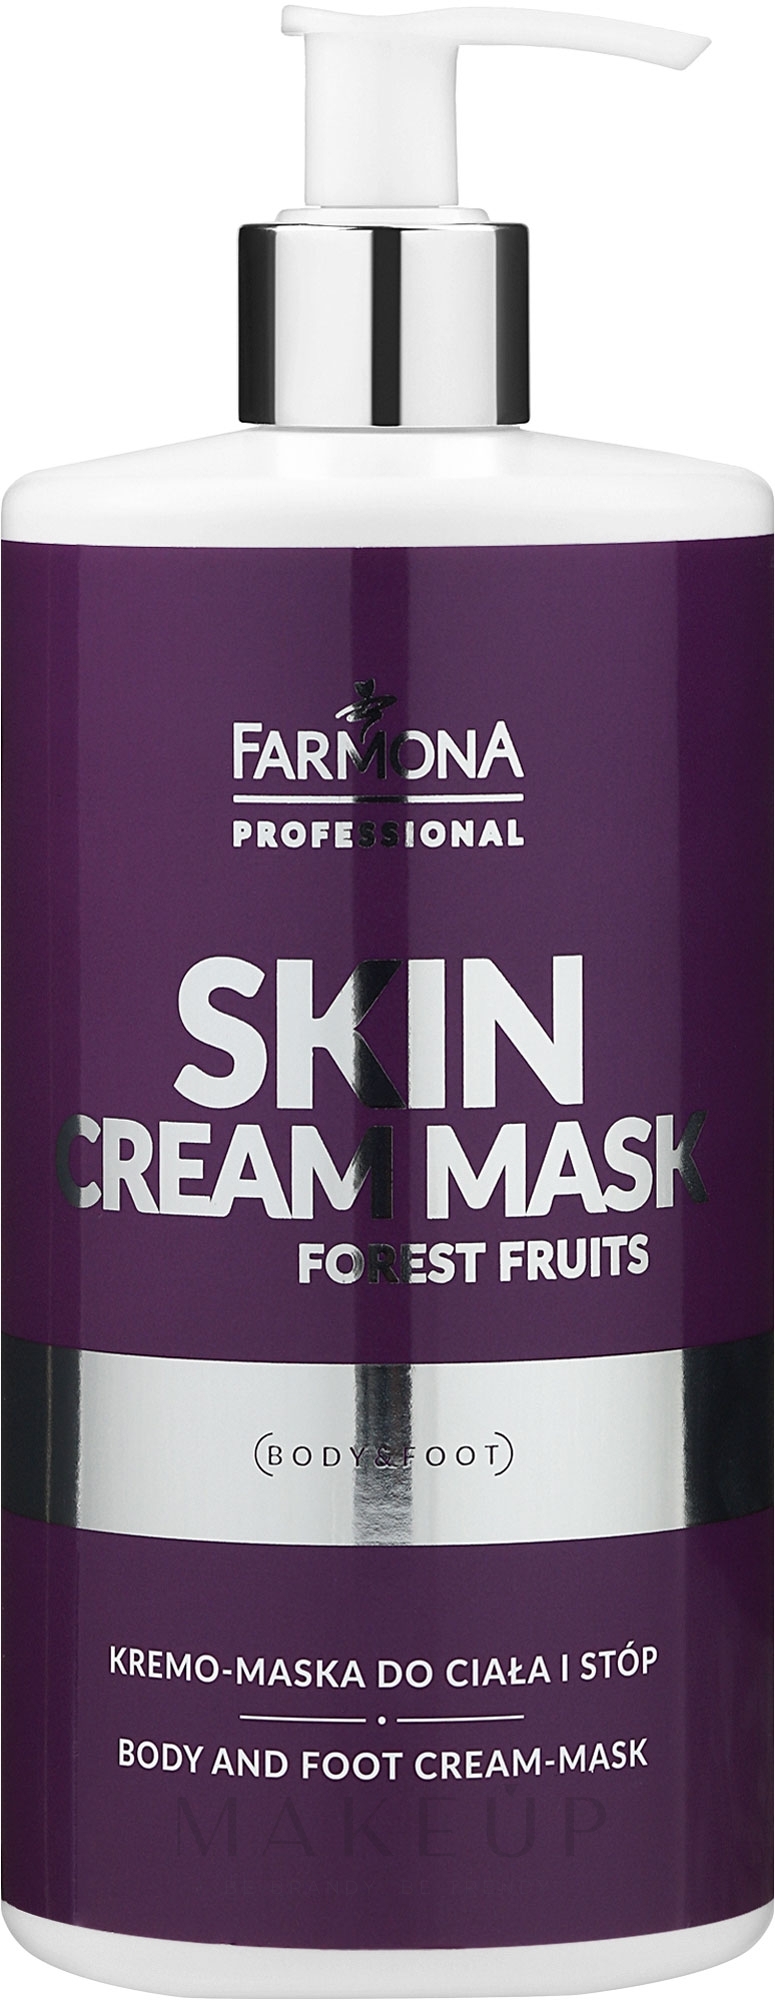 Creme-Maske für Körper und Beine - Farmona Professional Skin Cream Mask Forest Fruits — Bild 500 ml